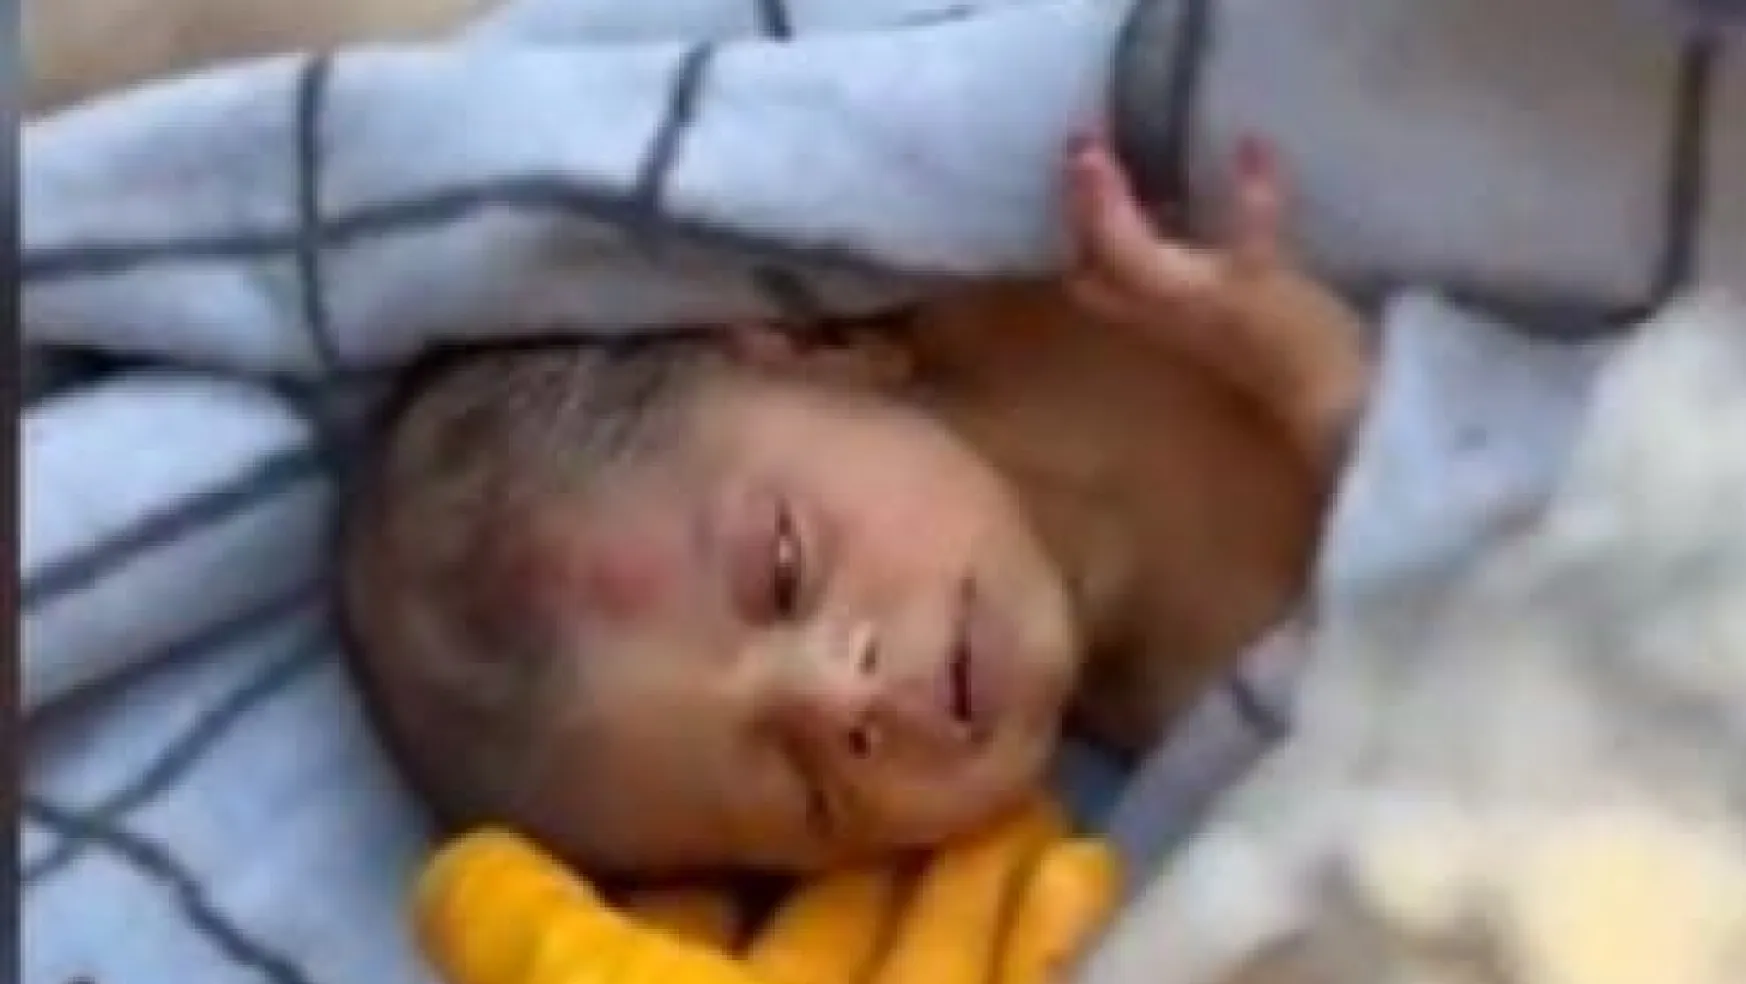 20 günlük bebek avucunda annesinin saçları ile enkazdan çıkarıldı